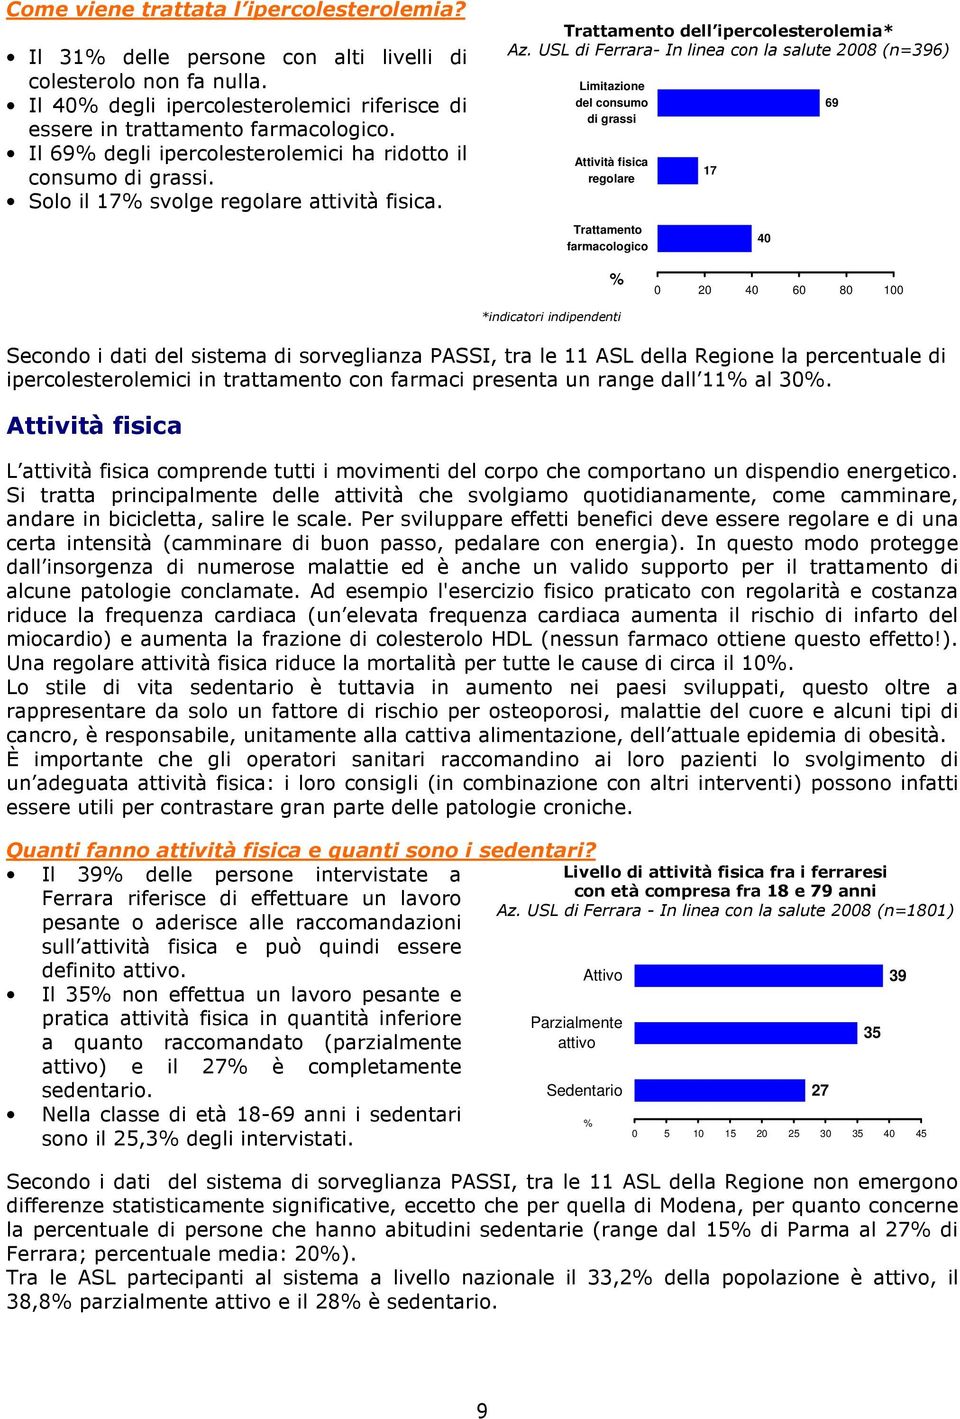 USL di Ferrara- In linea con la salute 2008 (n=396) Limitazione del consumo di grassi Attività fisica regolare Trattamento farmacologico 17 40 69 % 0 20 40 60 80 100 *indicatori indipendenti Secondo